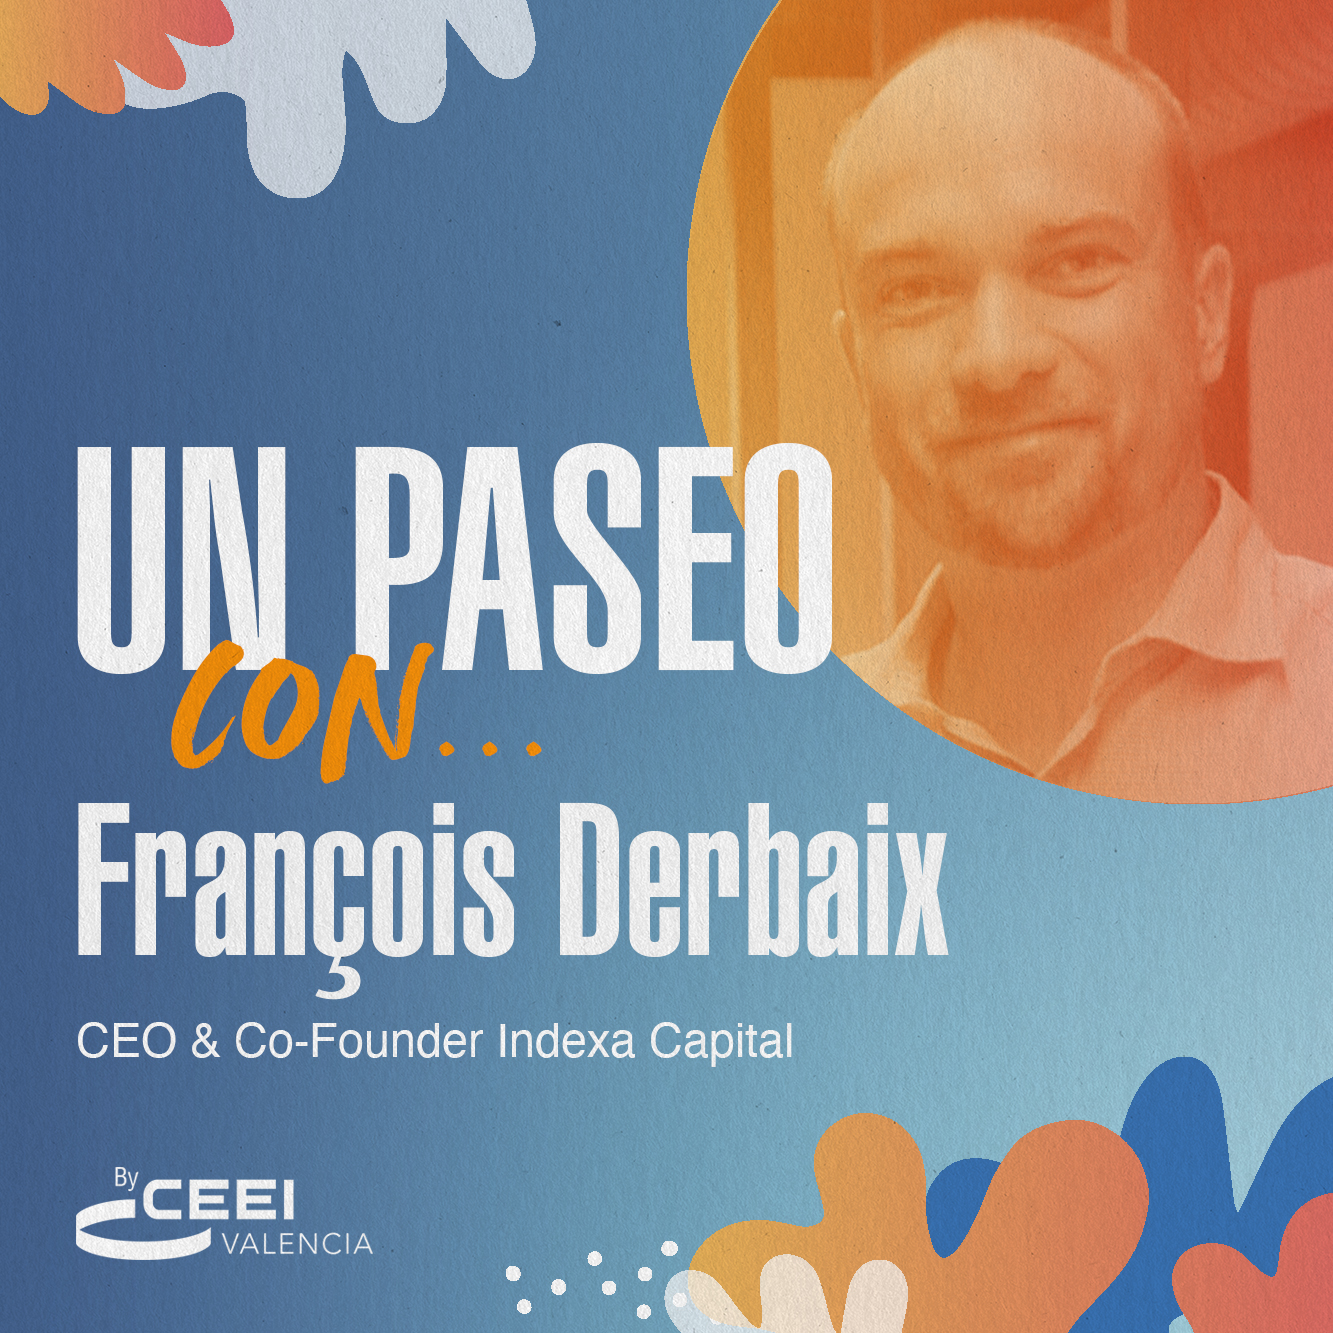 Un paseo con François Derbaix, CEO & Co-Founder Indexa Capital